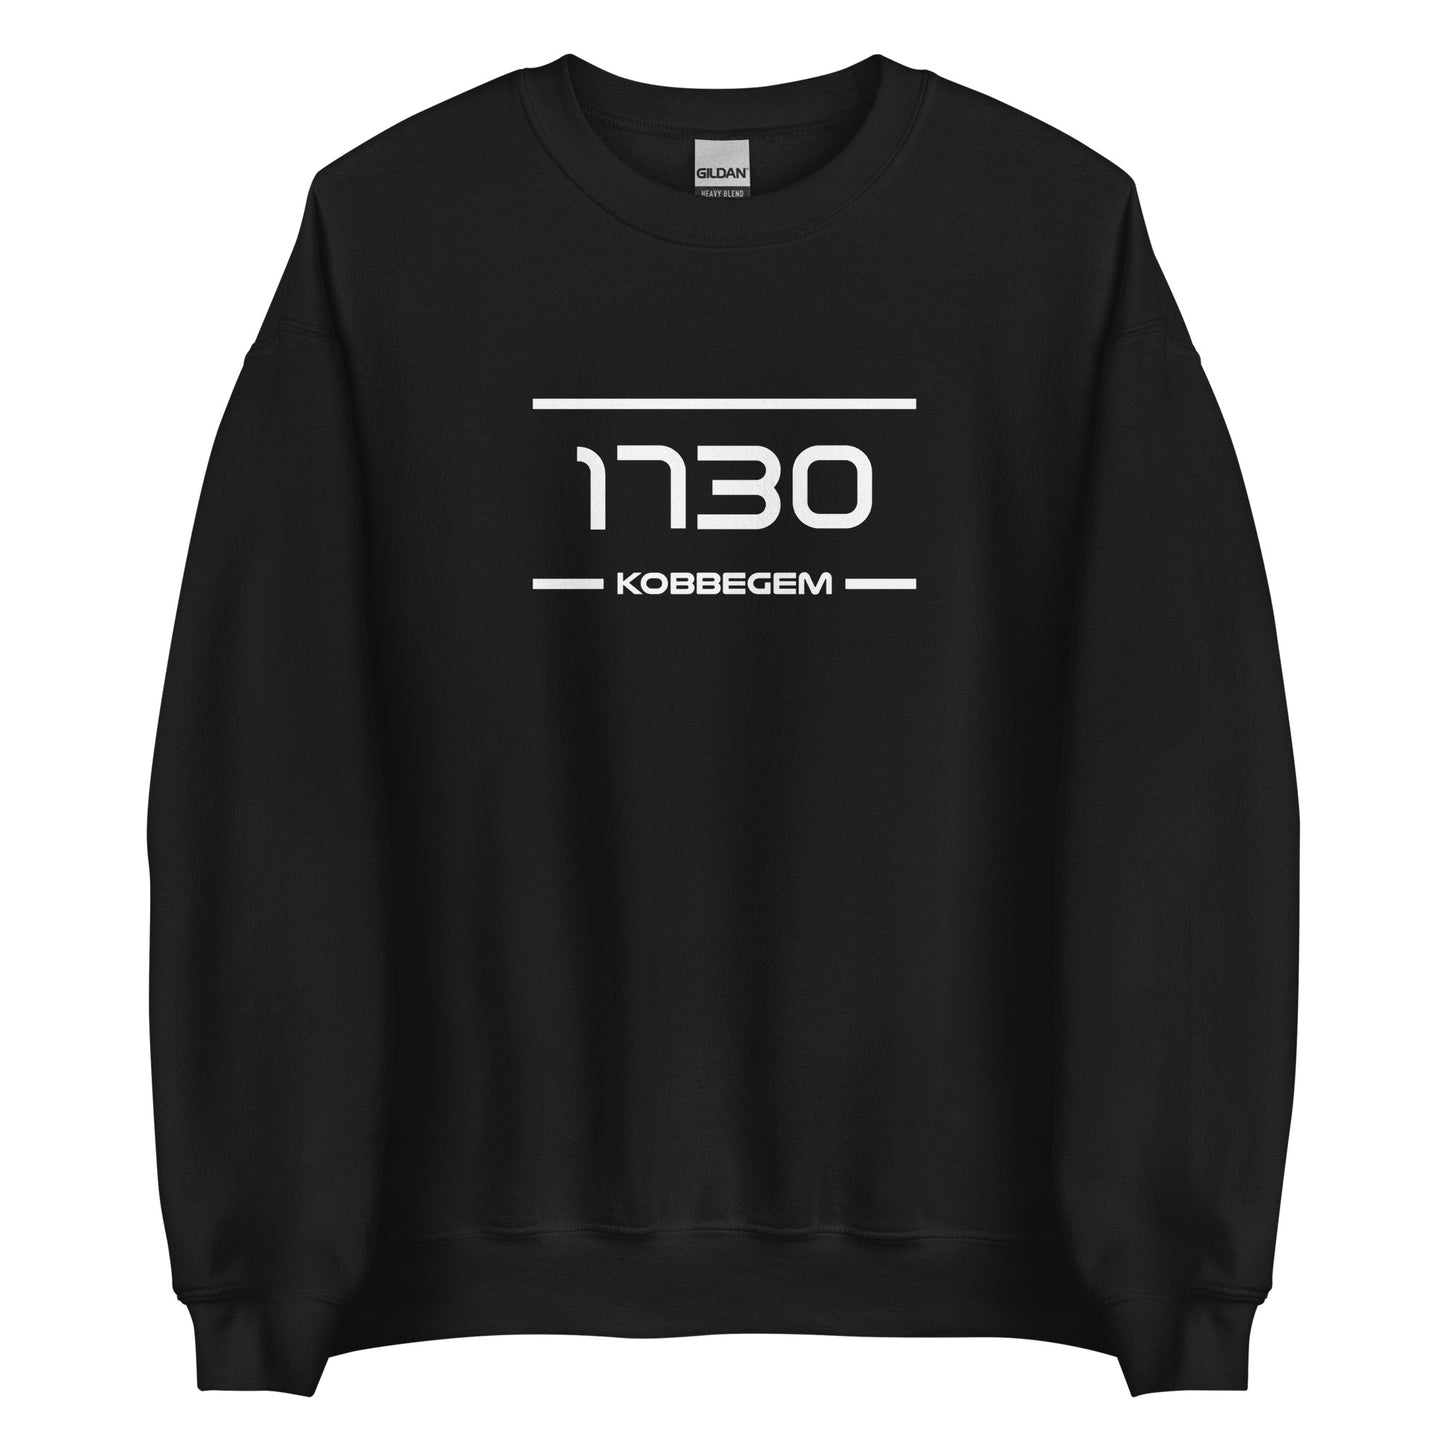 Sweater - 1730 - Kobbegem (M/V)